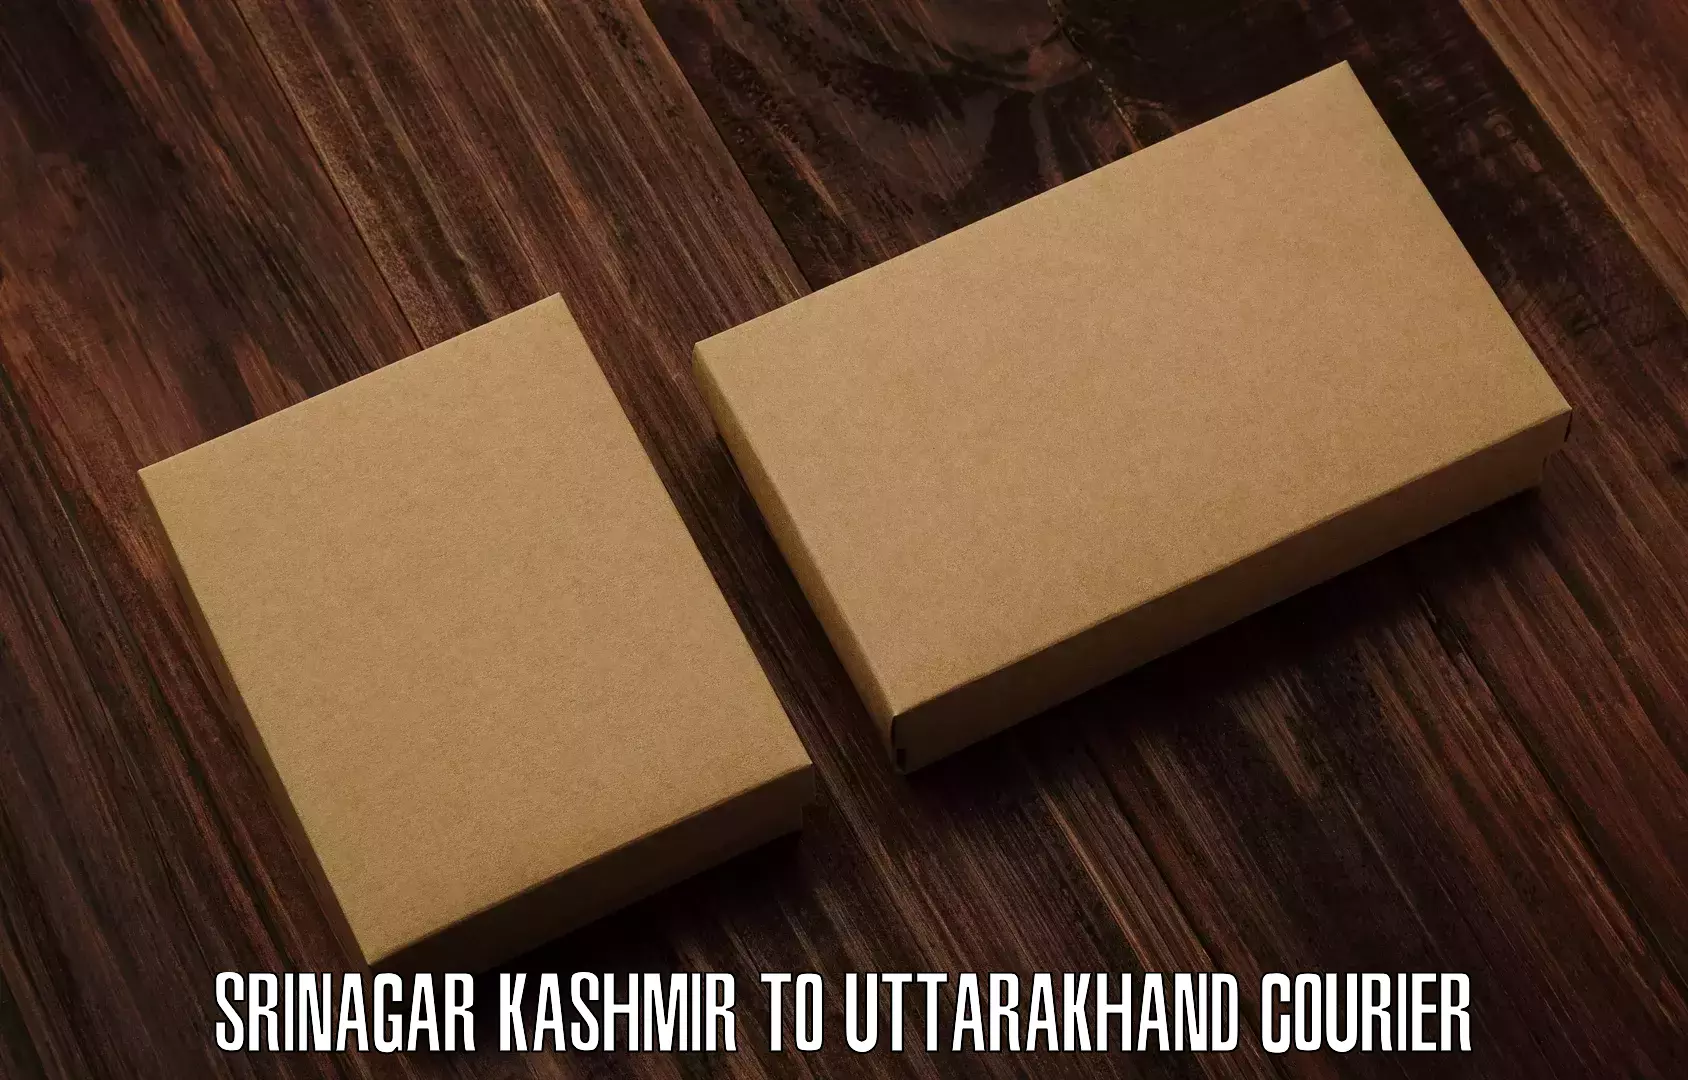 Customer-focused courier in Srinagar Kashmir to Uttarakhand